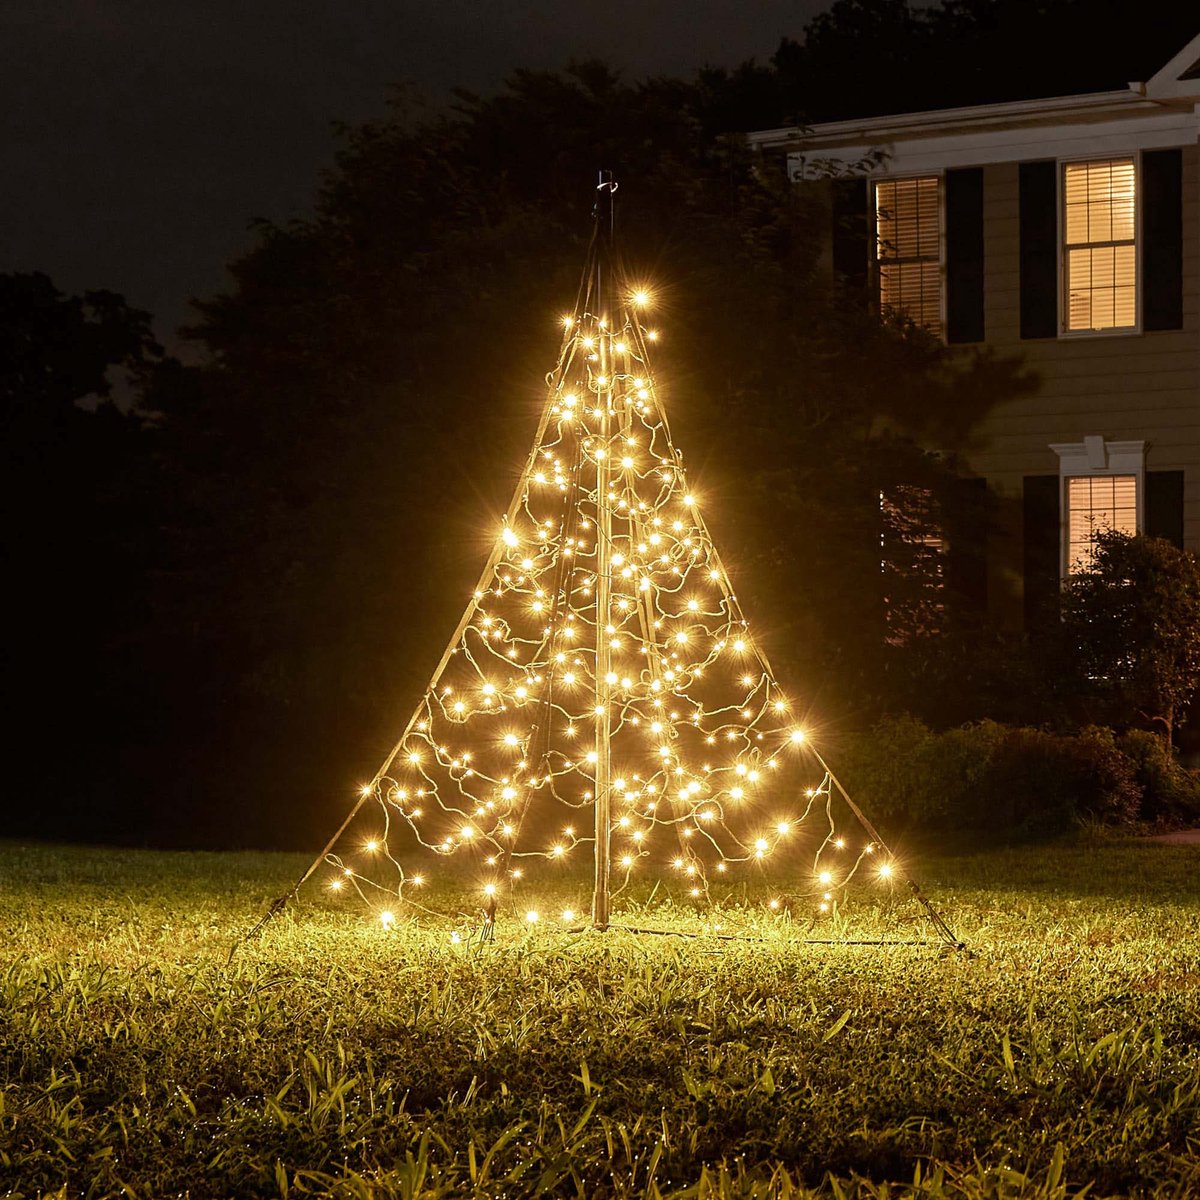 Fairybell Kerstboom voor buiten - All Surface / Geschikt voor alle ondergronden - 150CM-240LED - Warm wit met twinkle - Fairybell